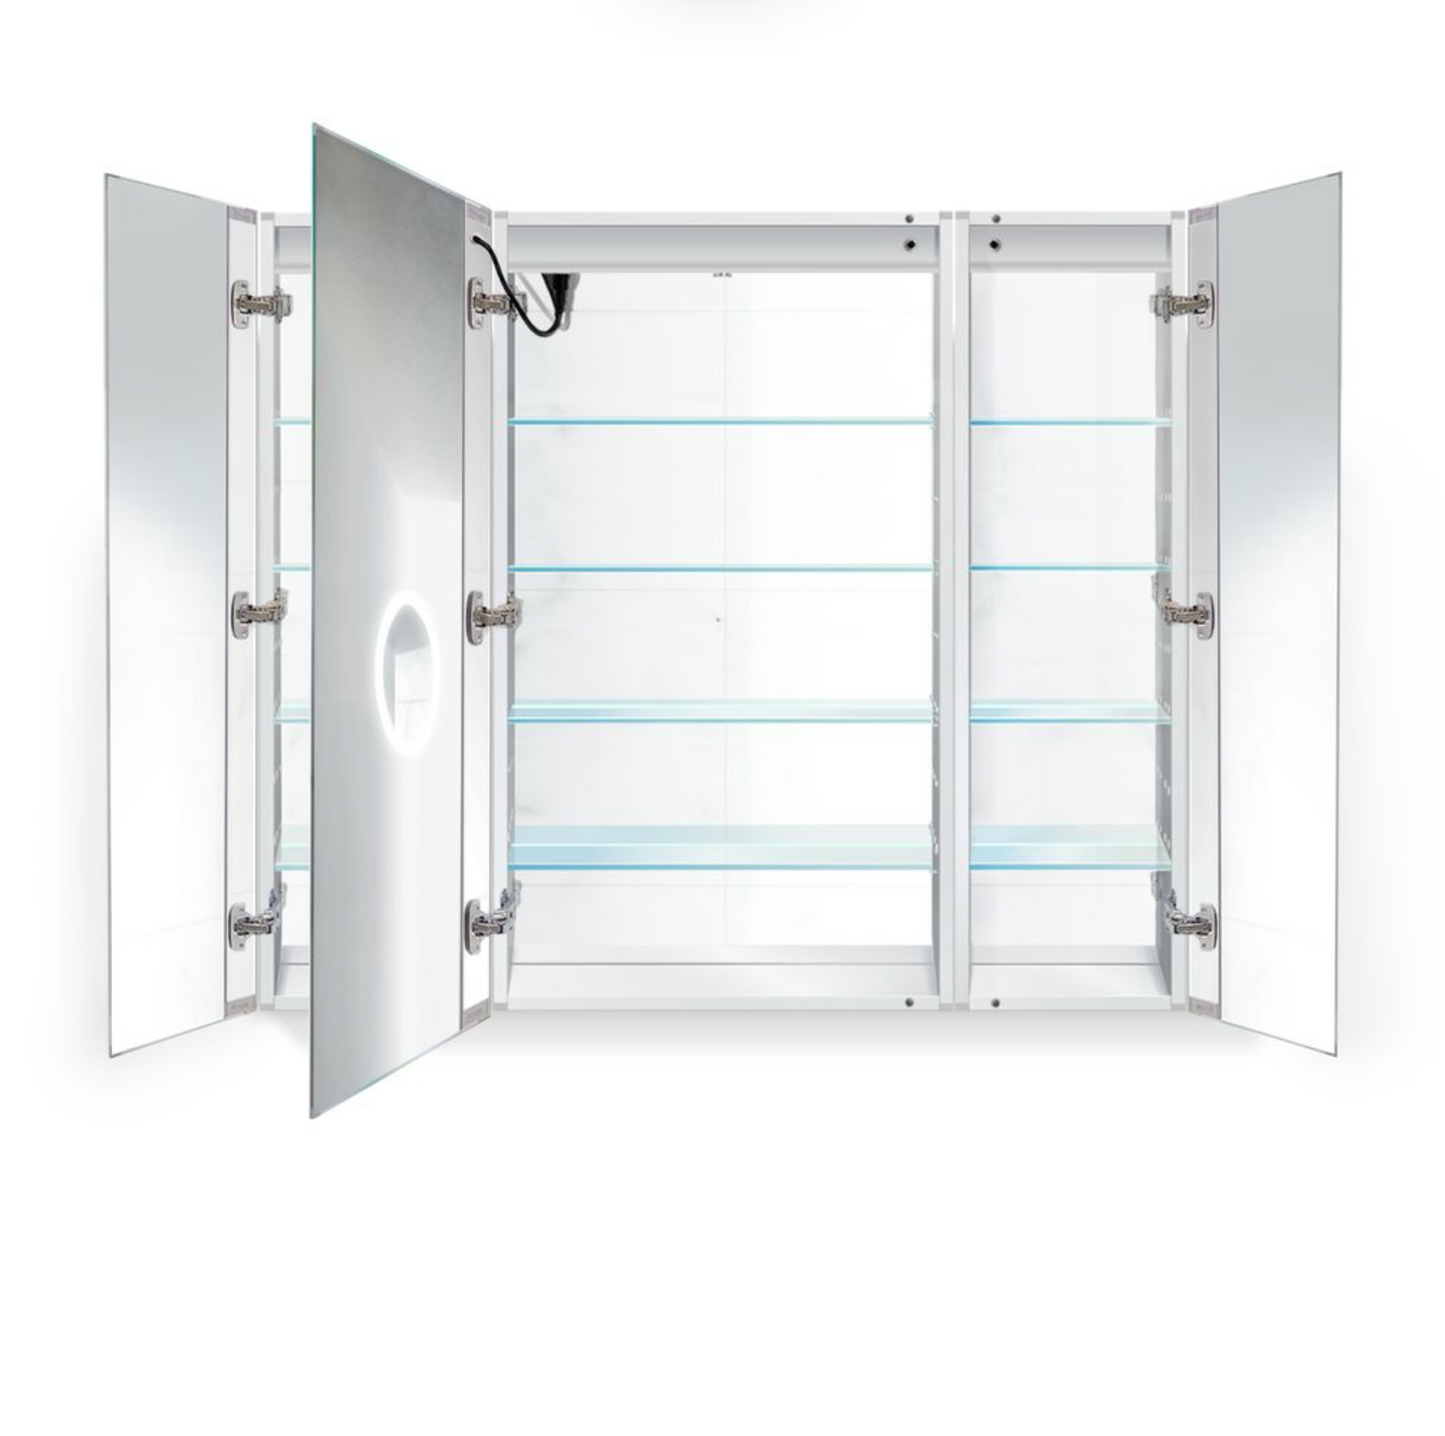 SVANGE 48 X 42 LED Lighted Mirror Medicine Cabinet, Defogger included, 2 & 3 Door Options